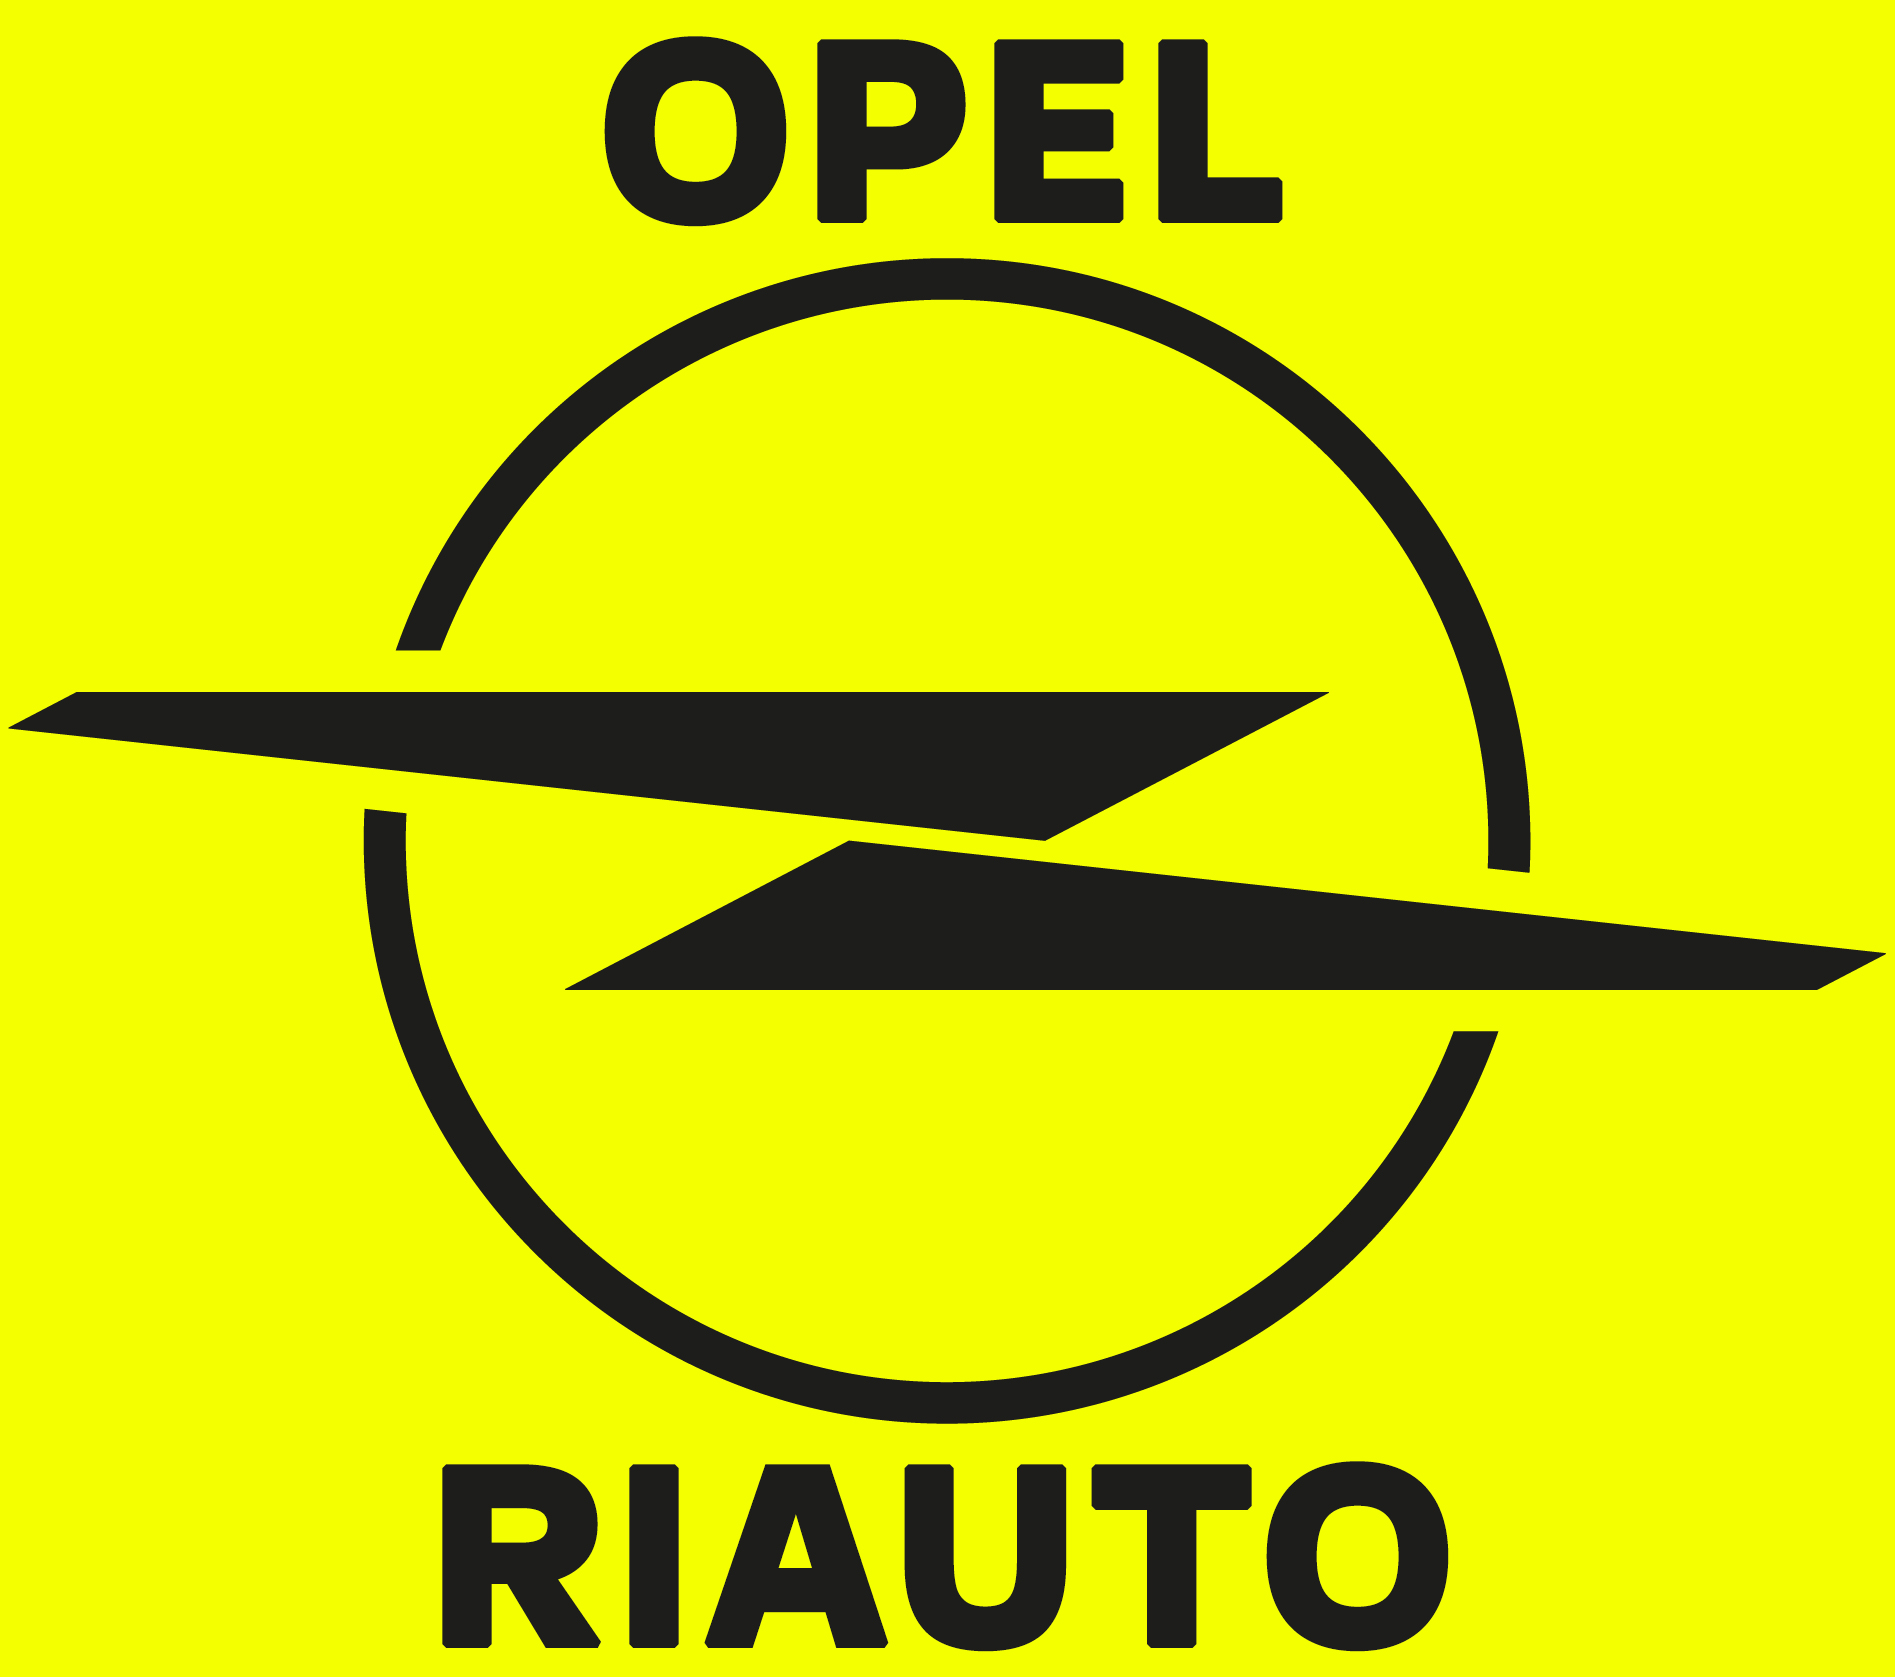 colaboradores/Opel.jpg